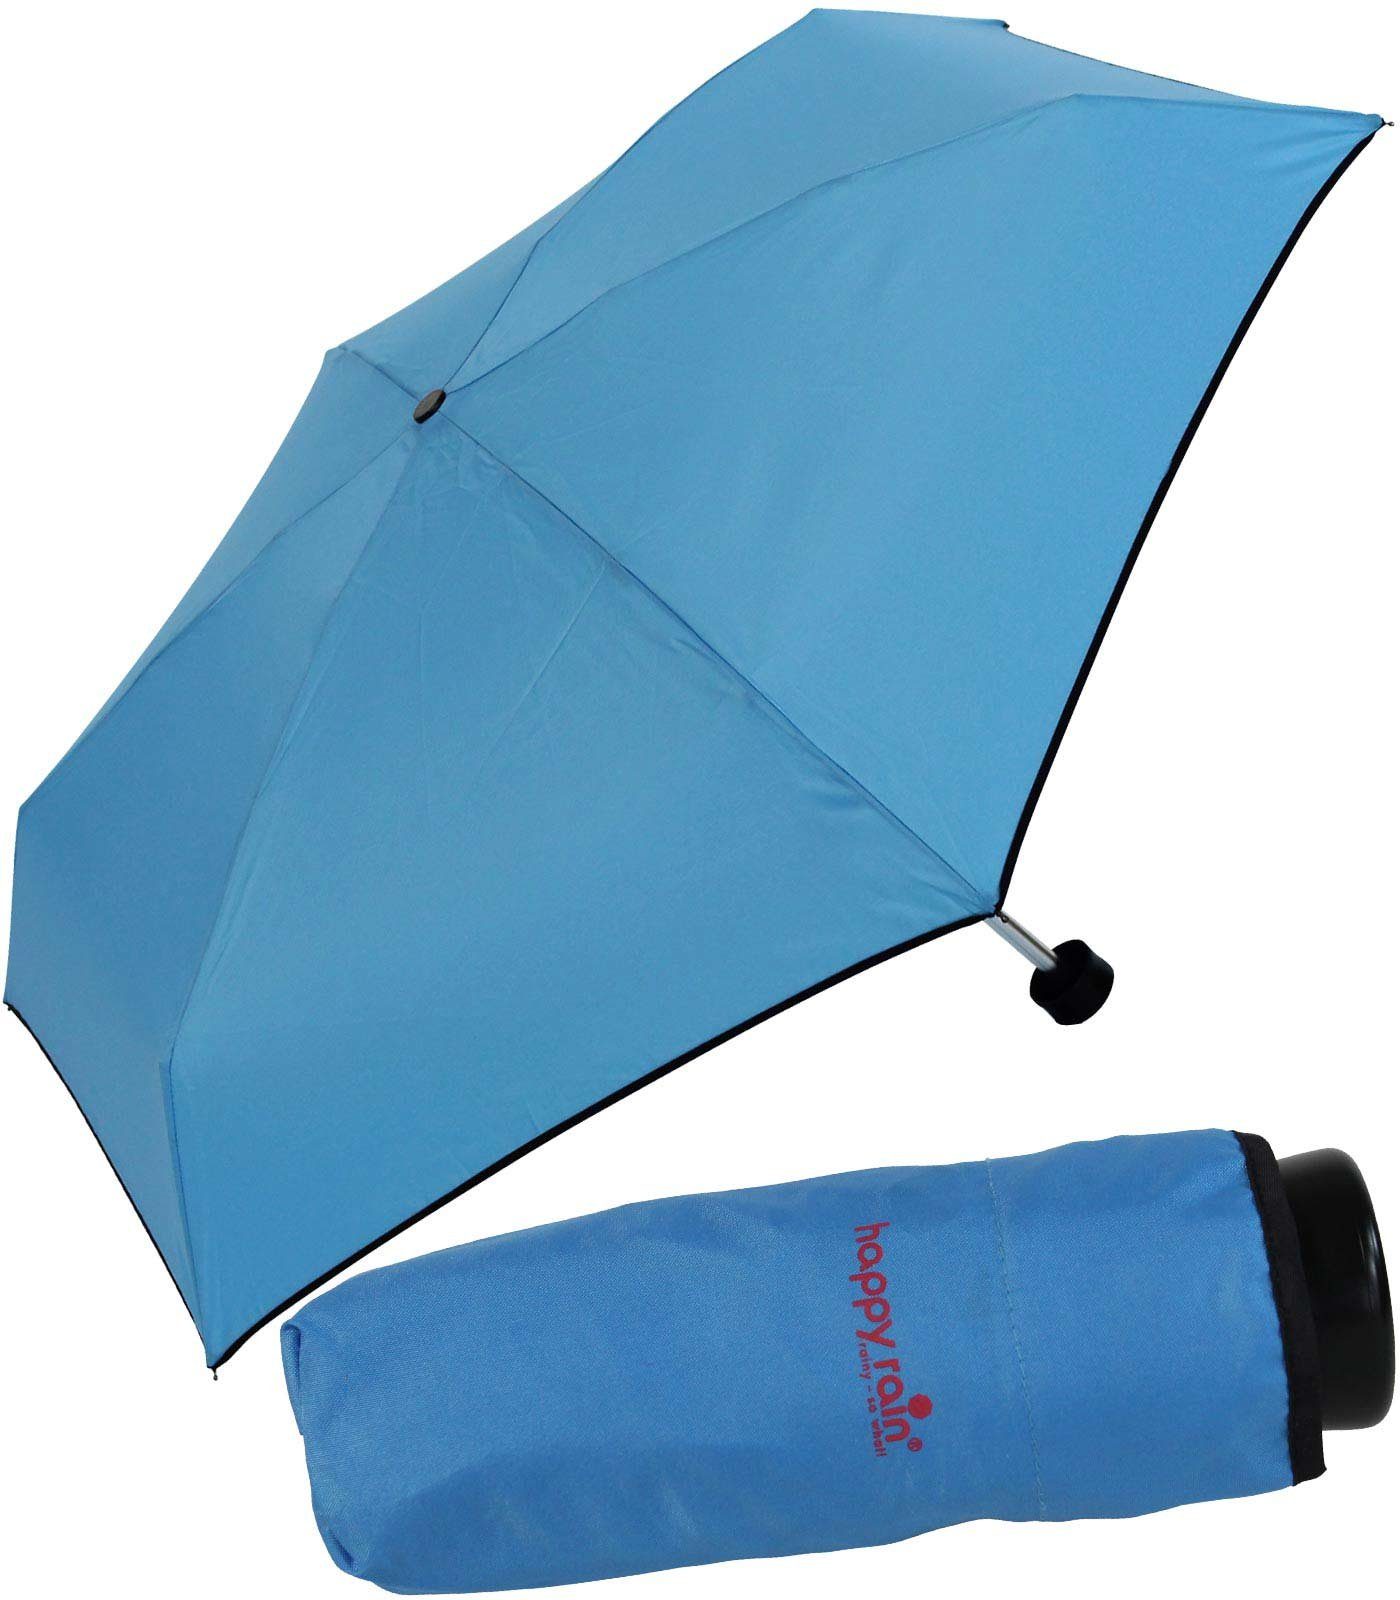 HAPPY RAIN Taschenregenschirm winziger Regenschirm mit Handöffner für Damen, erhältlich in vielen kräftigen Farben - aqua